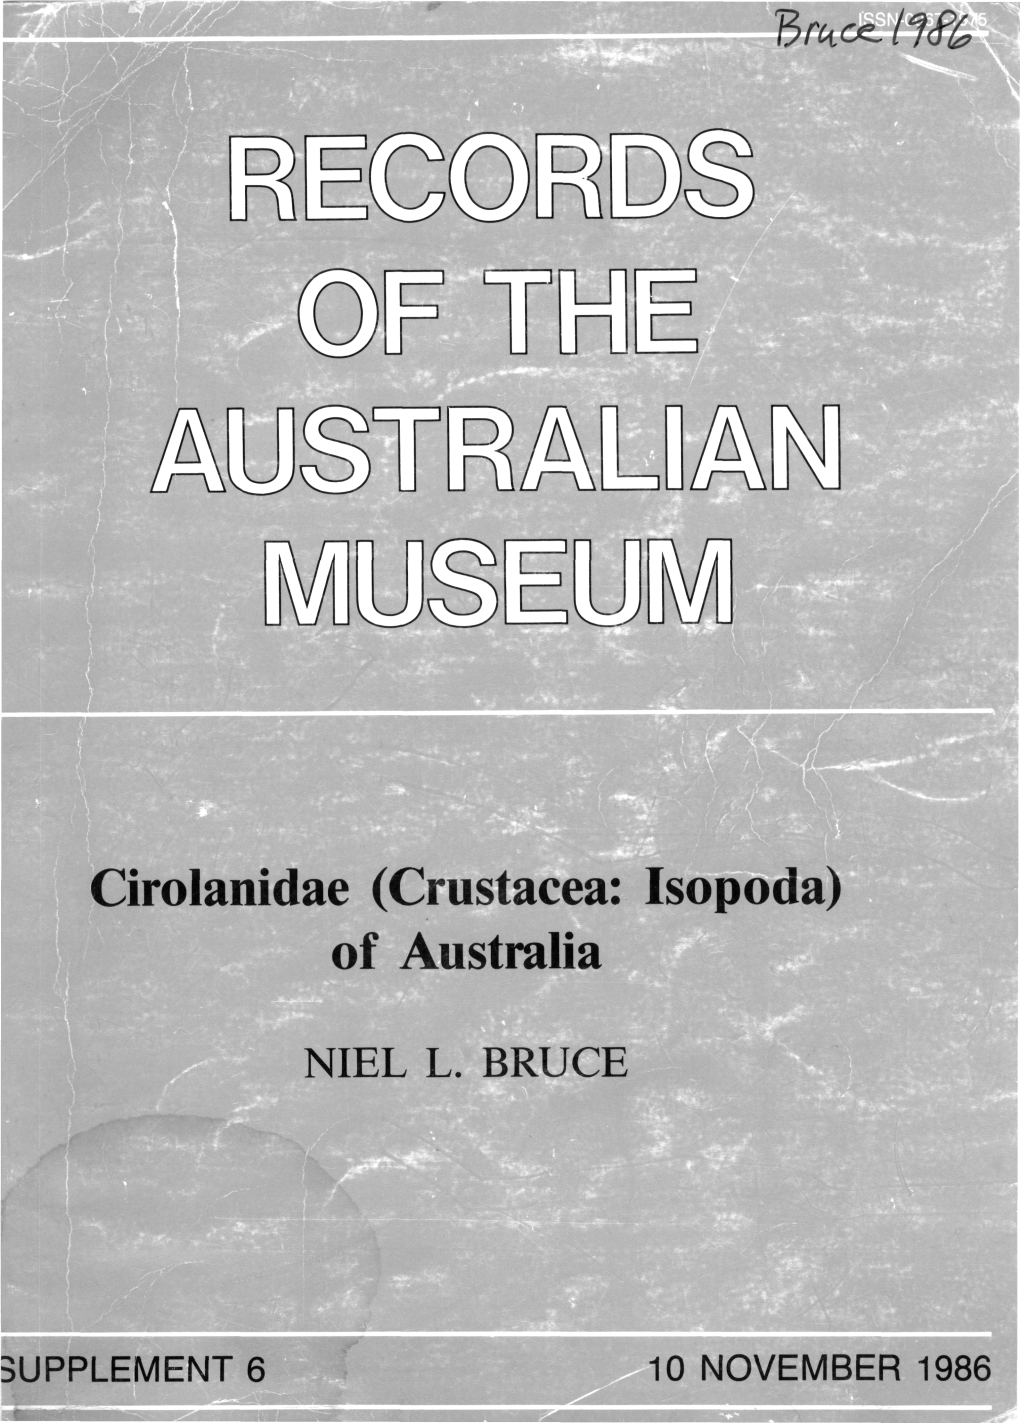 Cirolanidae (Crustacea: Isopoda) of Australia